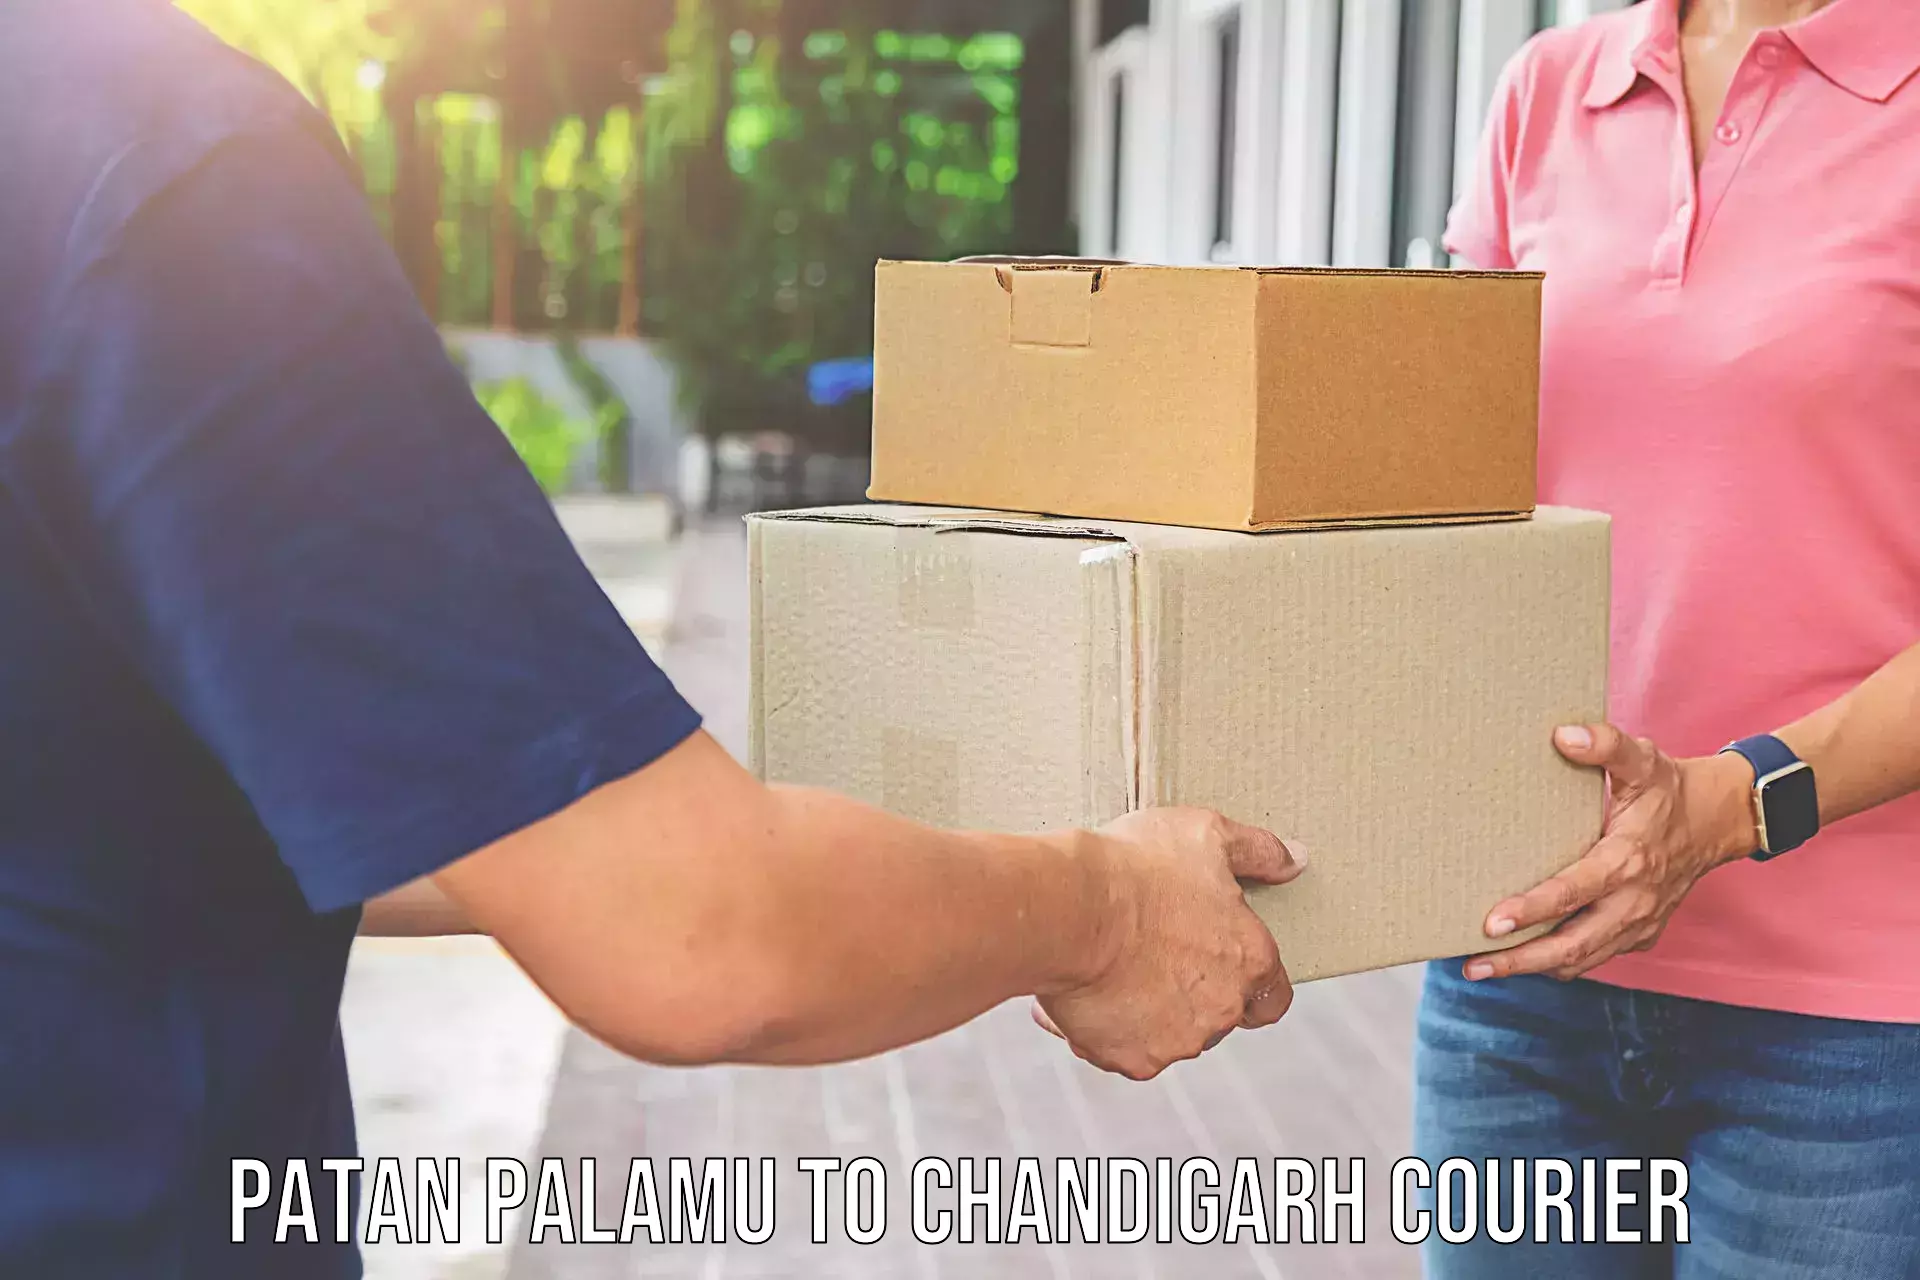 Specialized moving company Patan Palamu to Chandigarh